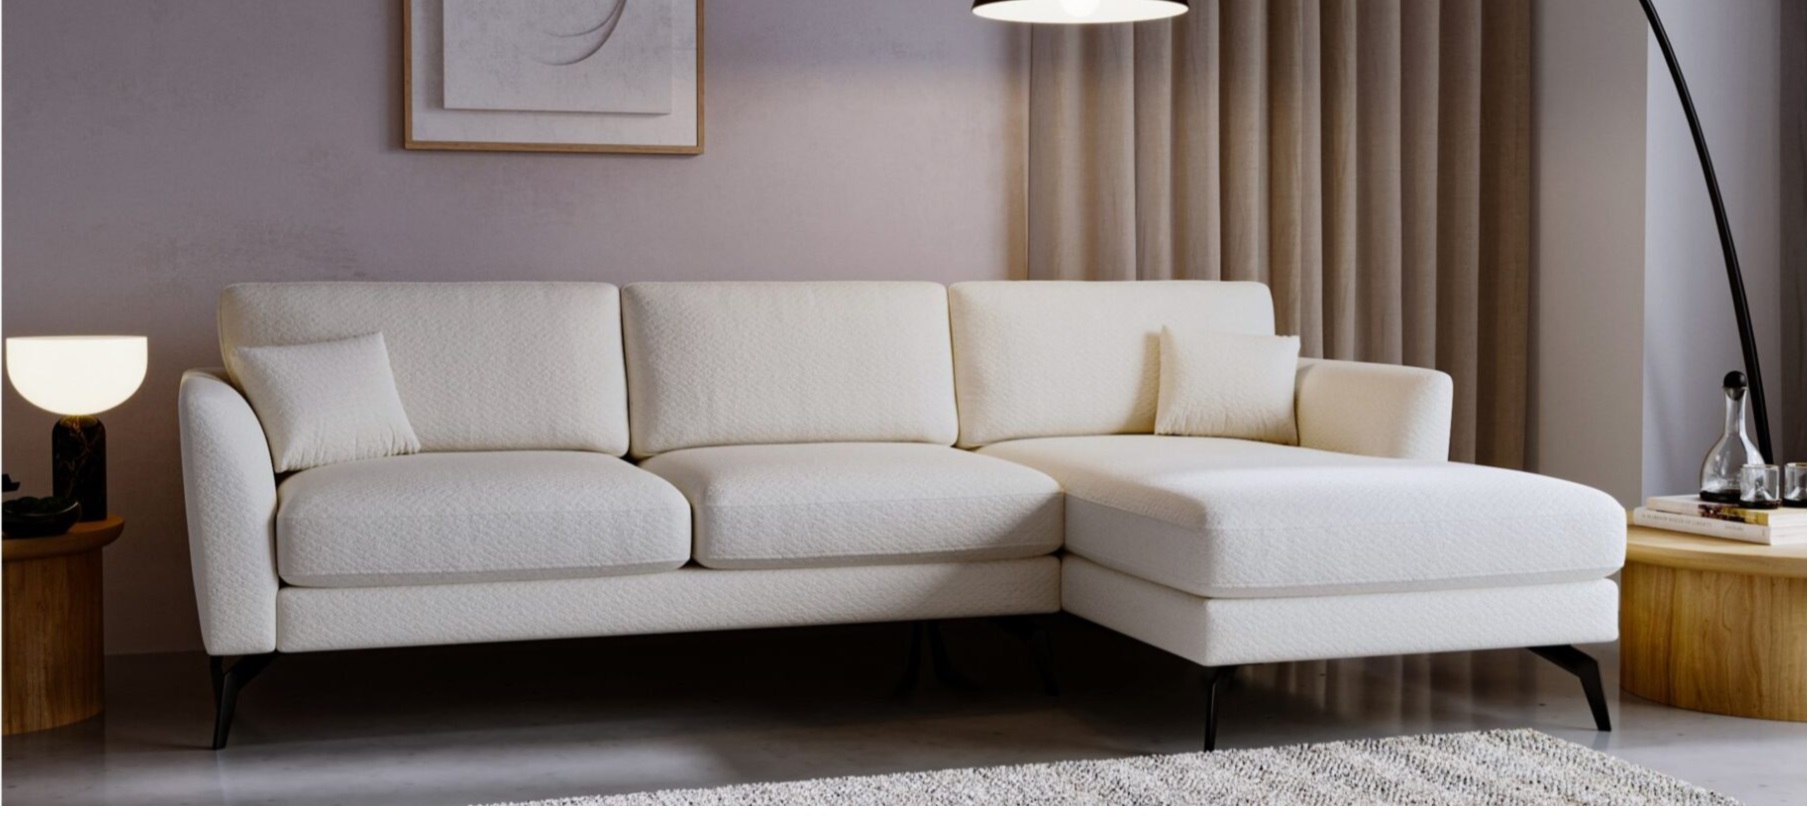 sofa namur